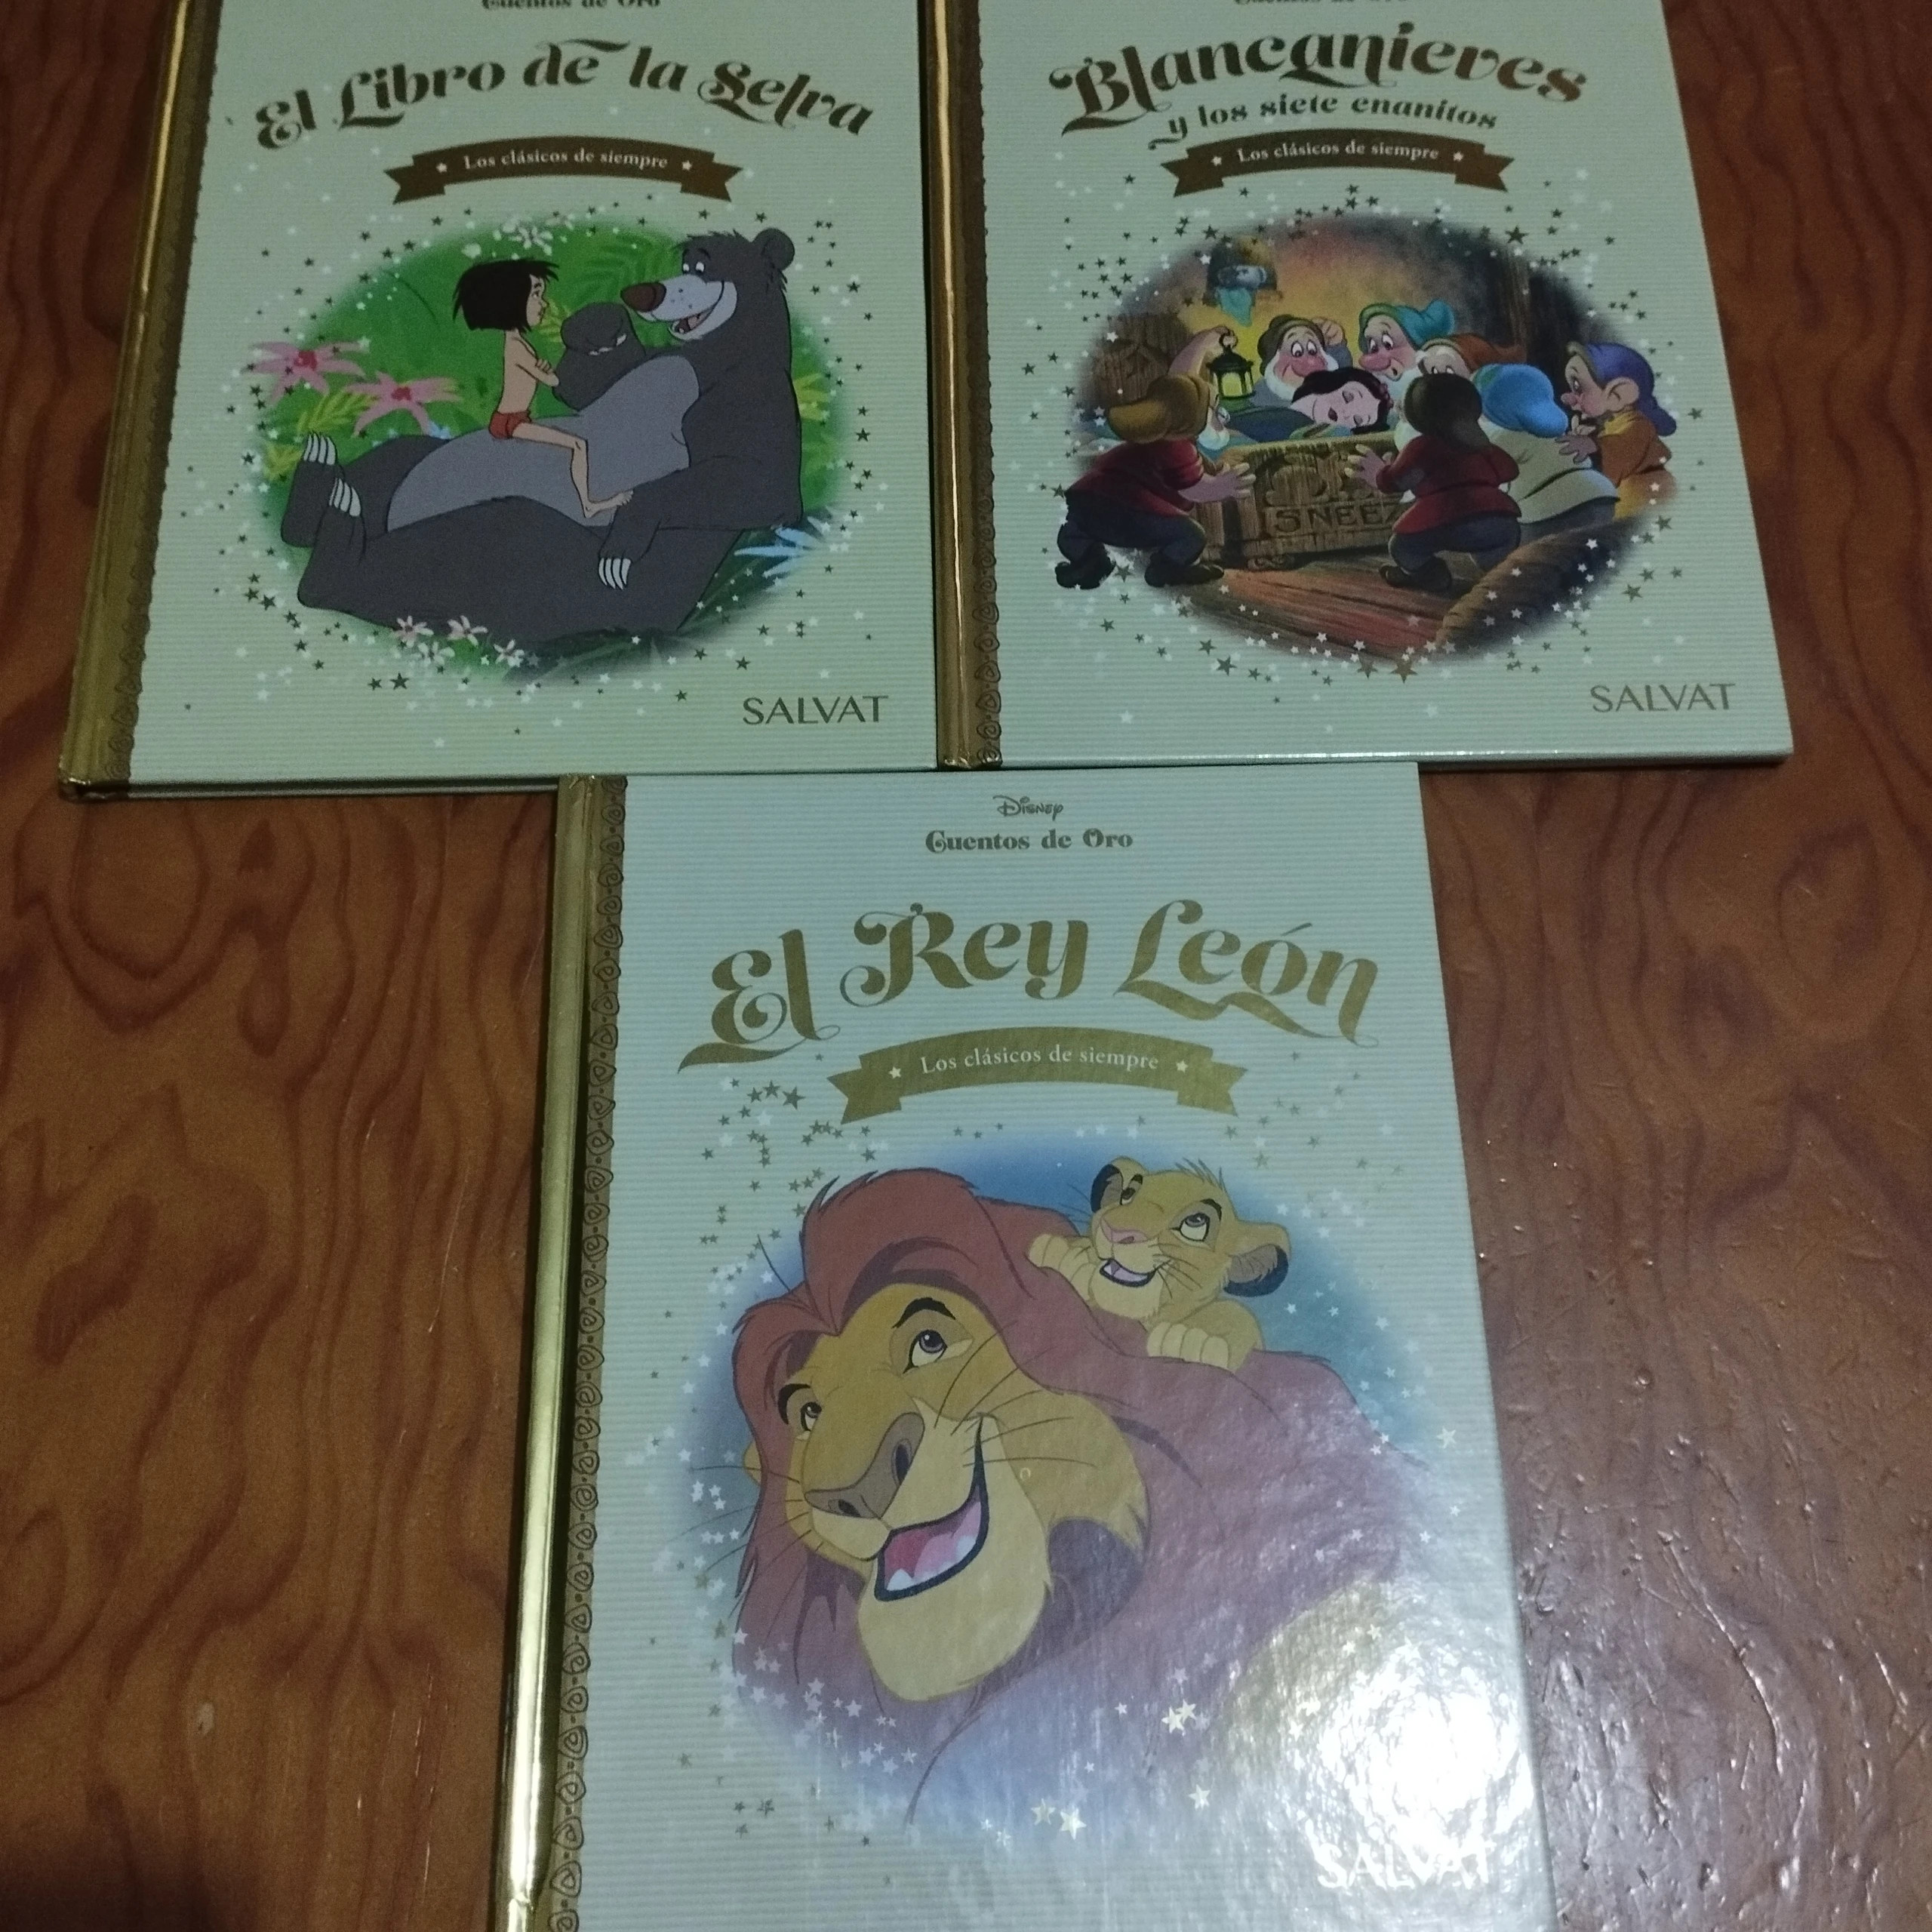 Reuniendo las mejores historias, cuentos de oro de Disney ll